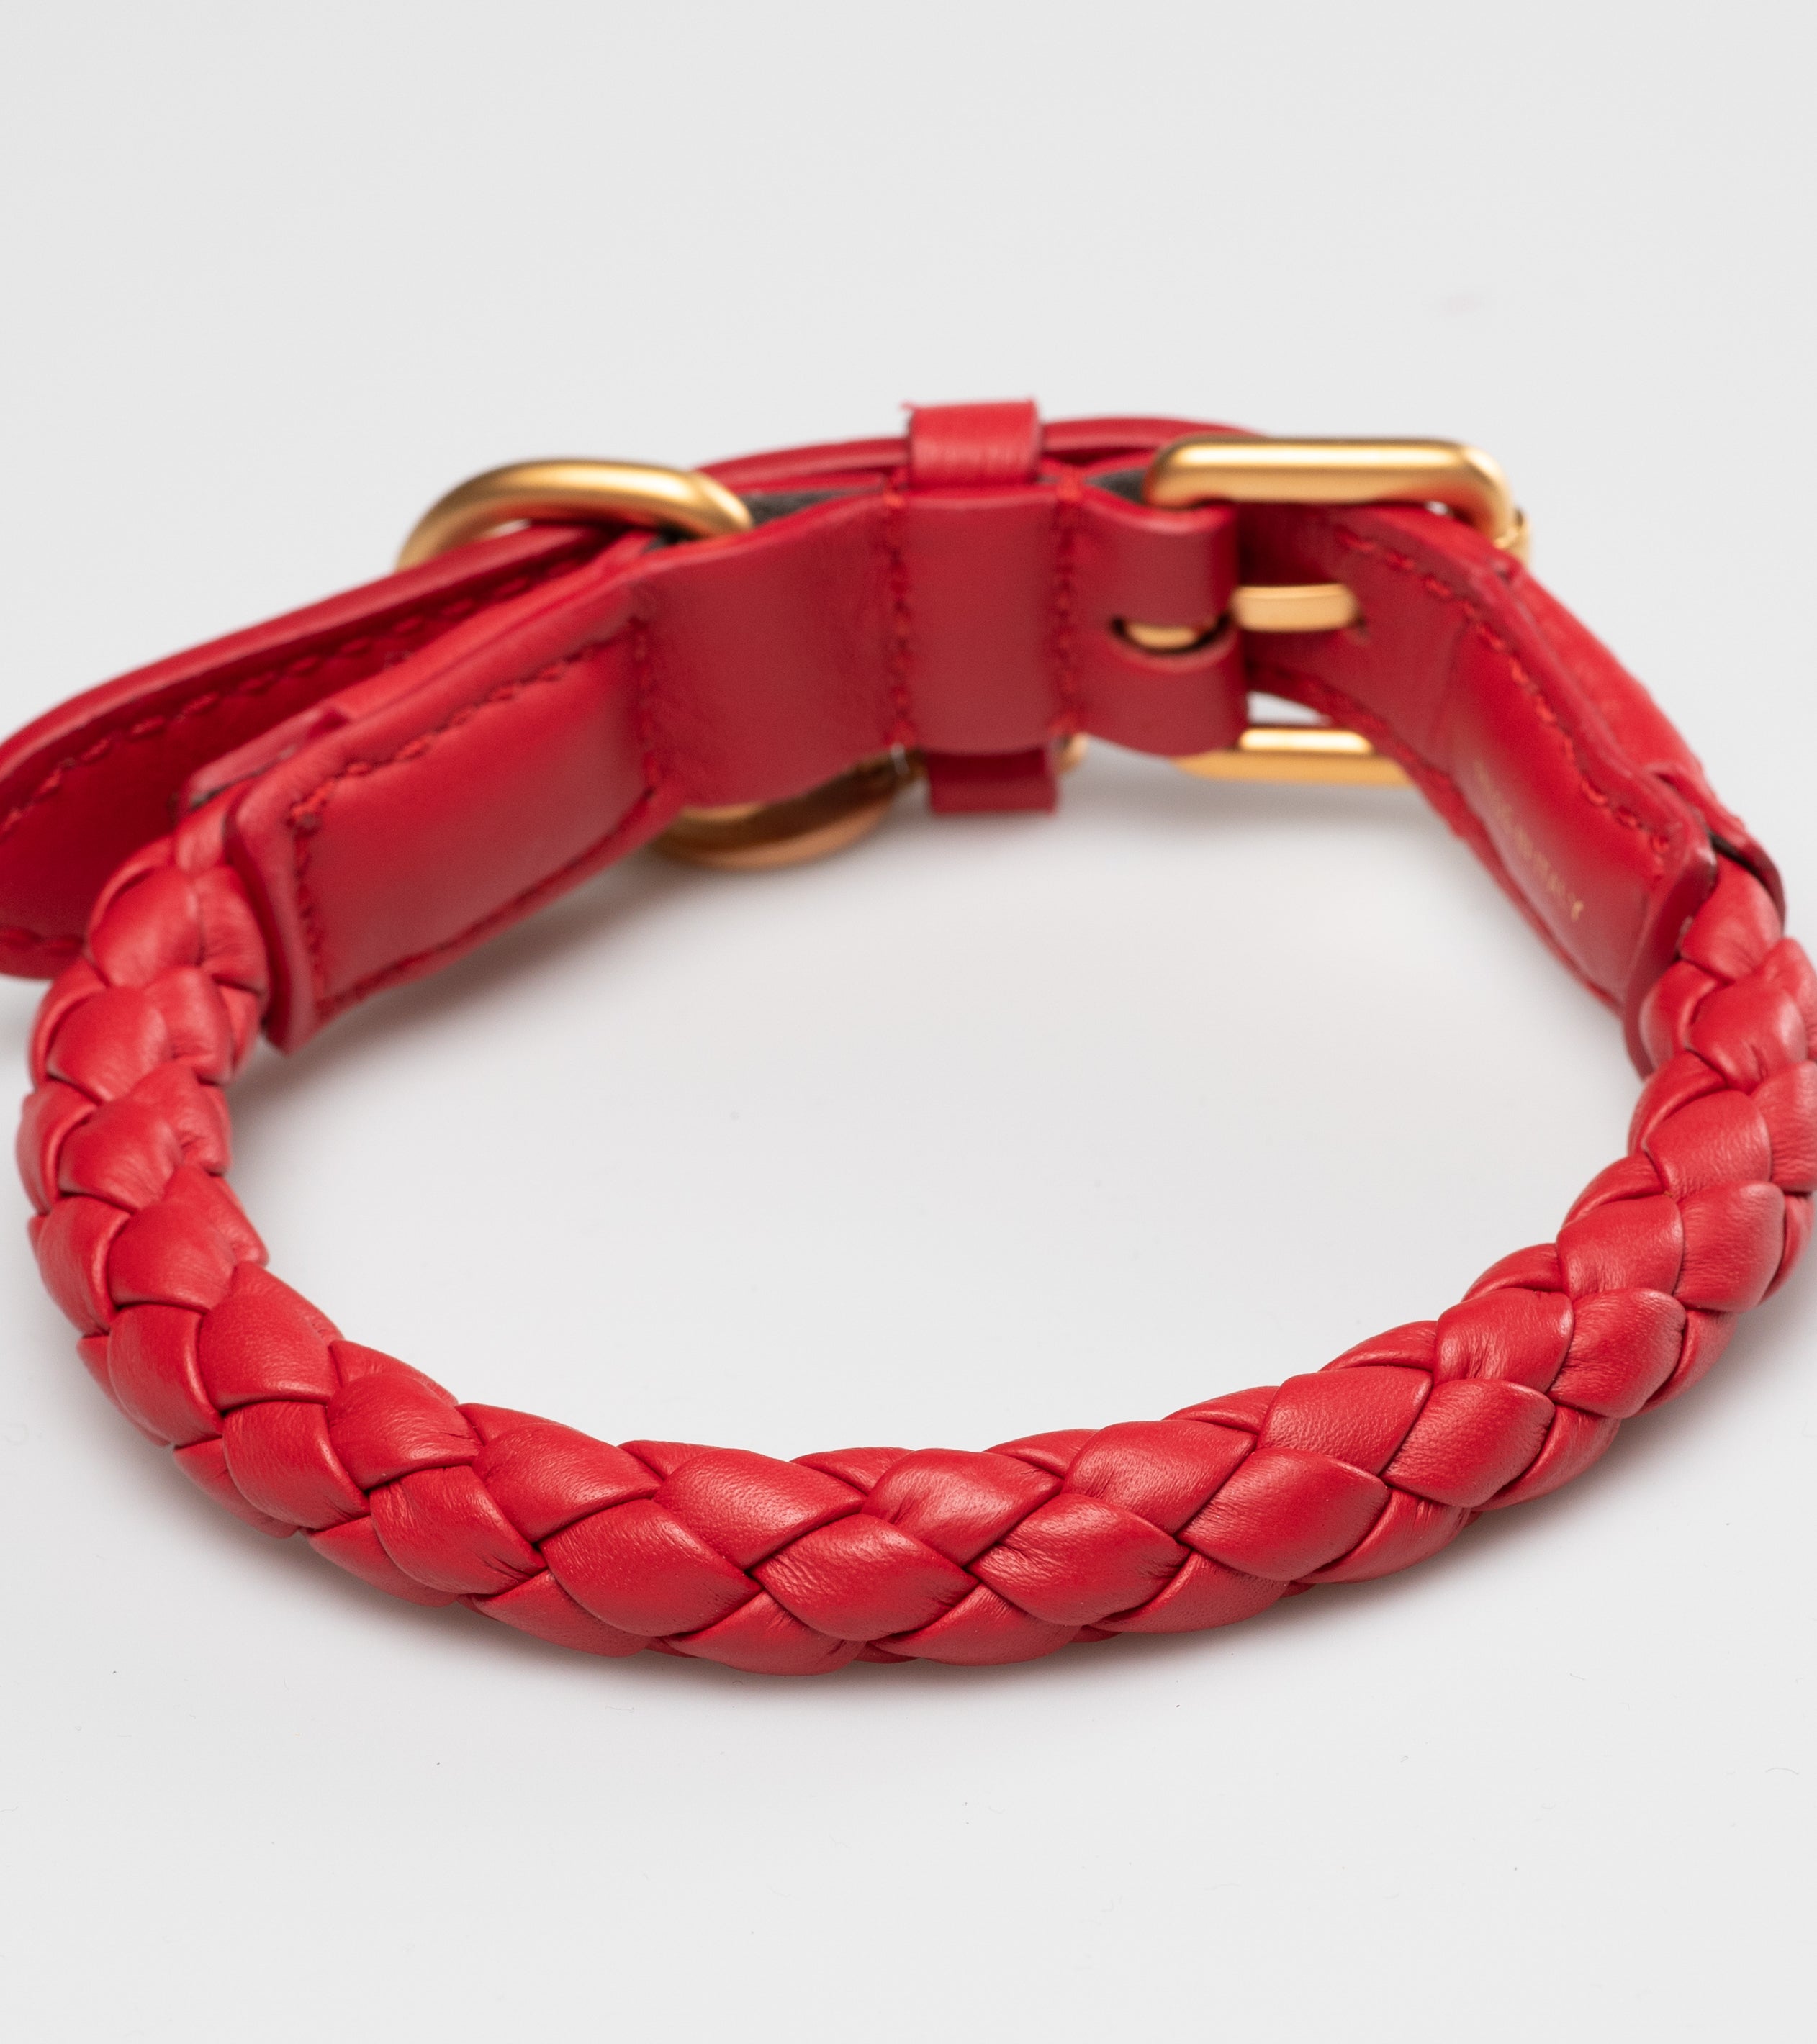 red-dog-collar-detail_d22f13a5-1a2d-4aa5-809a-571557174d82.jpg